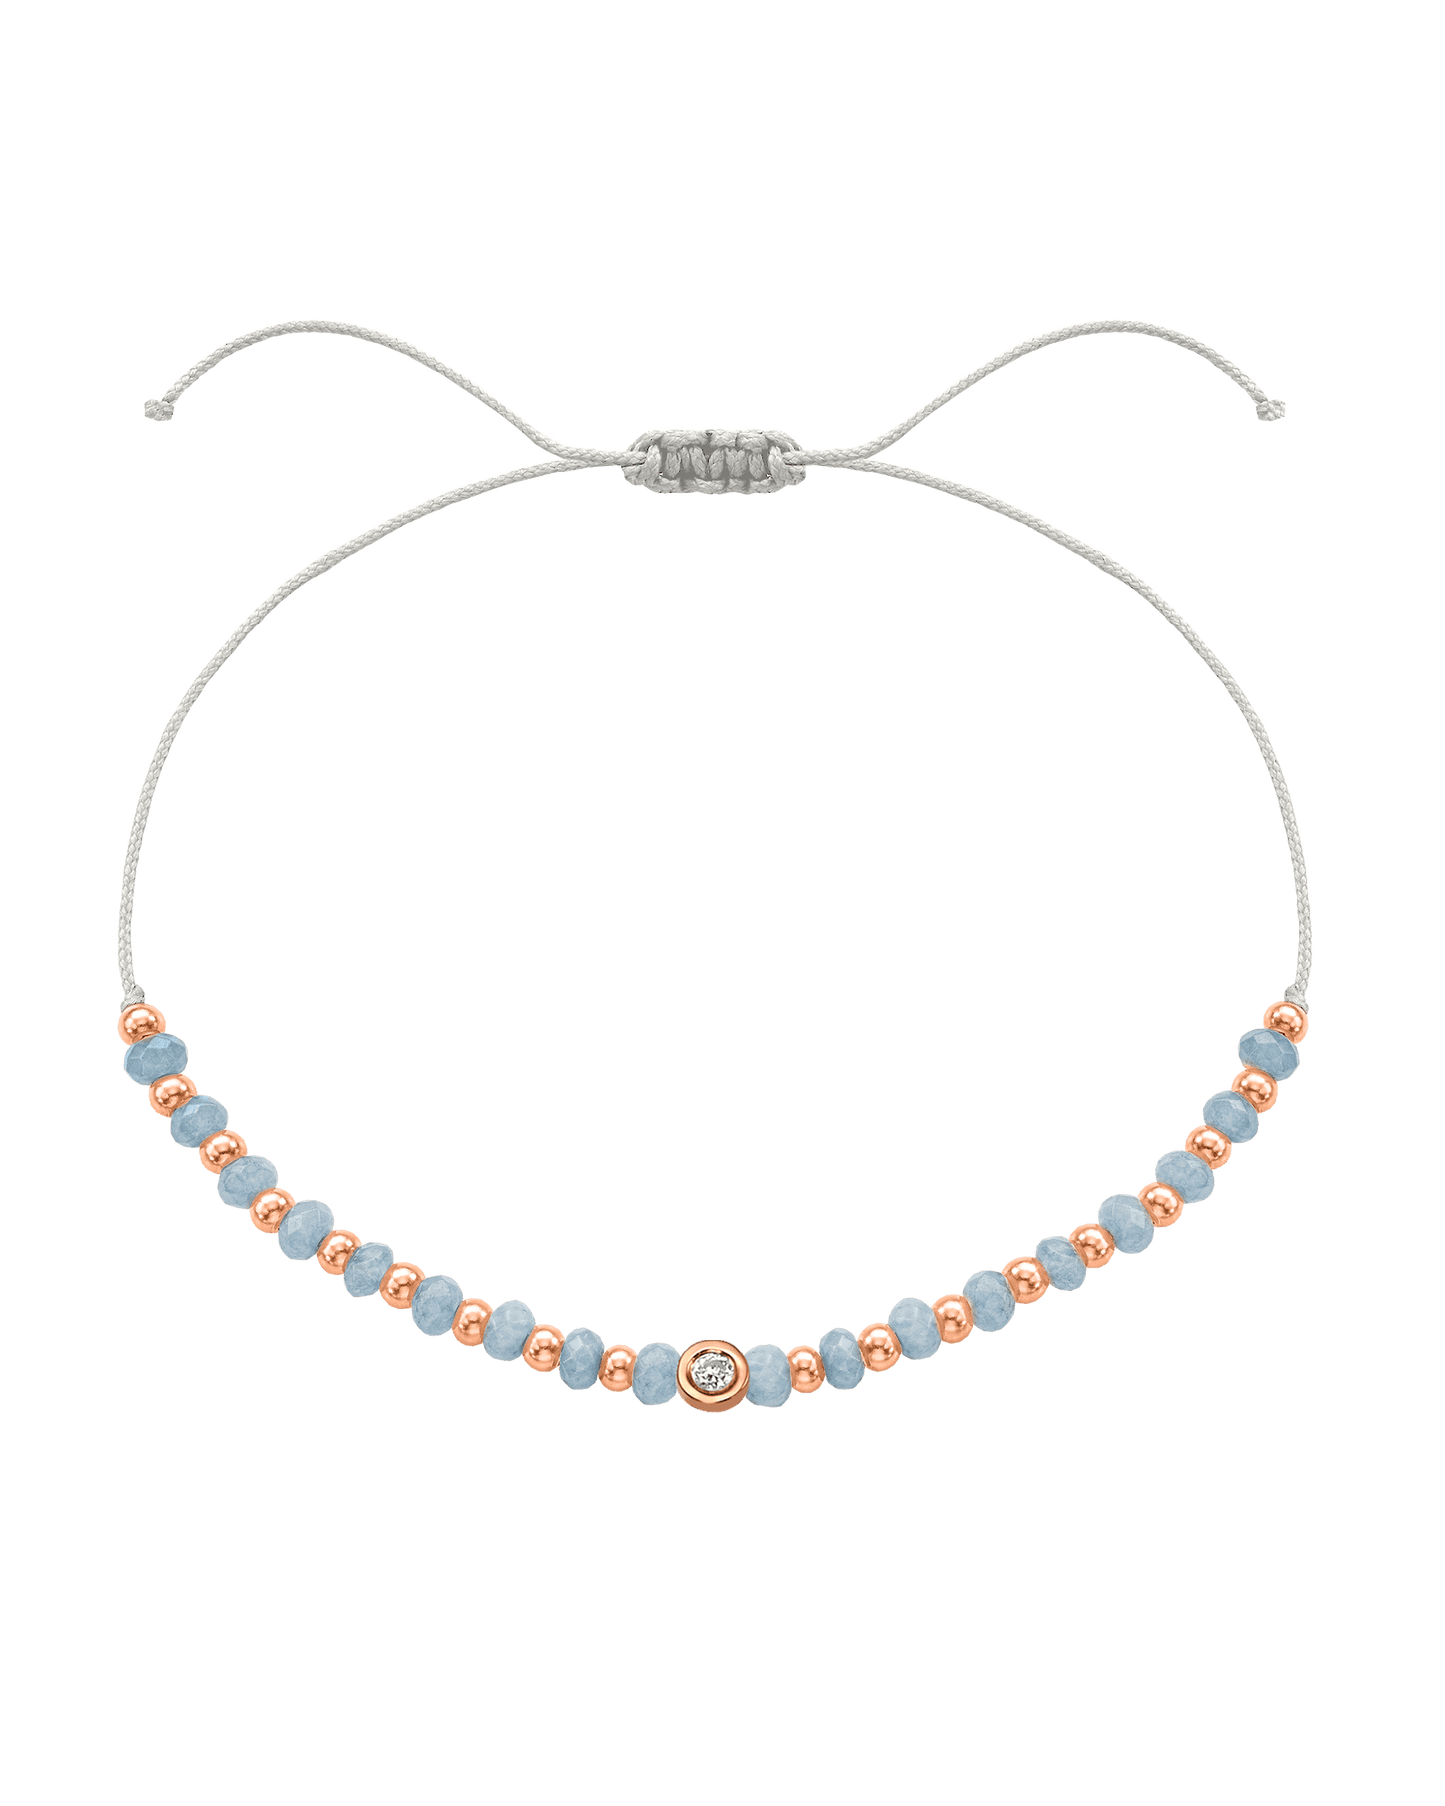 Celestite Gemstone String of Love Bracelet for Mindfulness - 14K Rose Gold Bracelets 14K Solid Gold Pearl Small: 0.03ct 